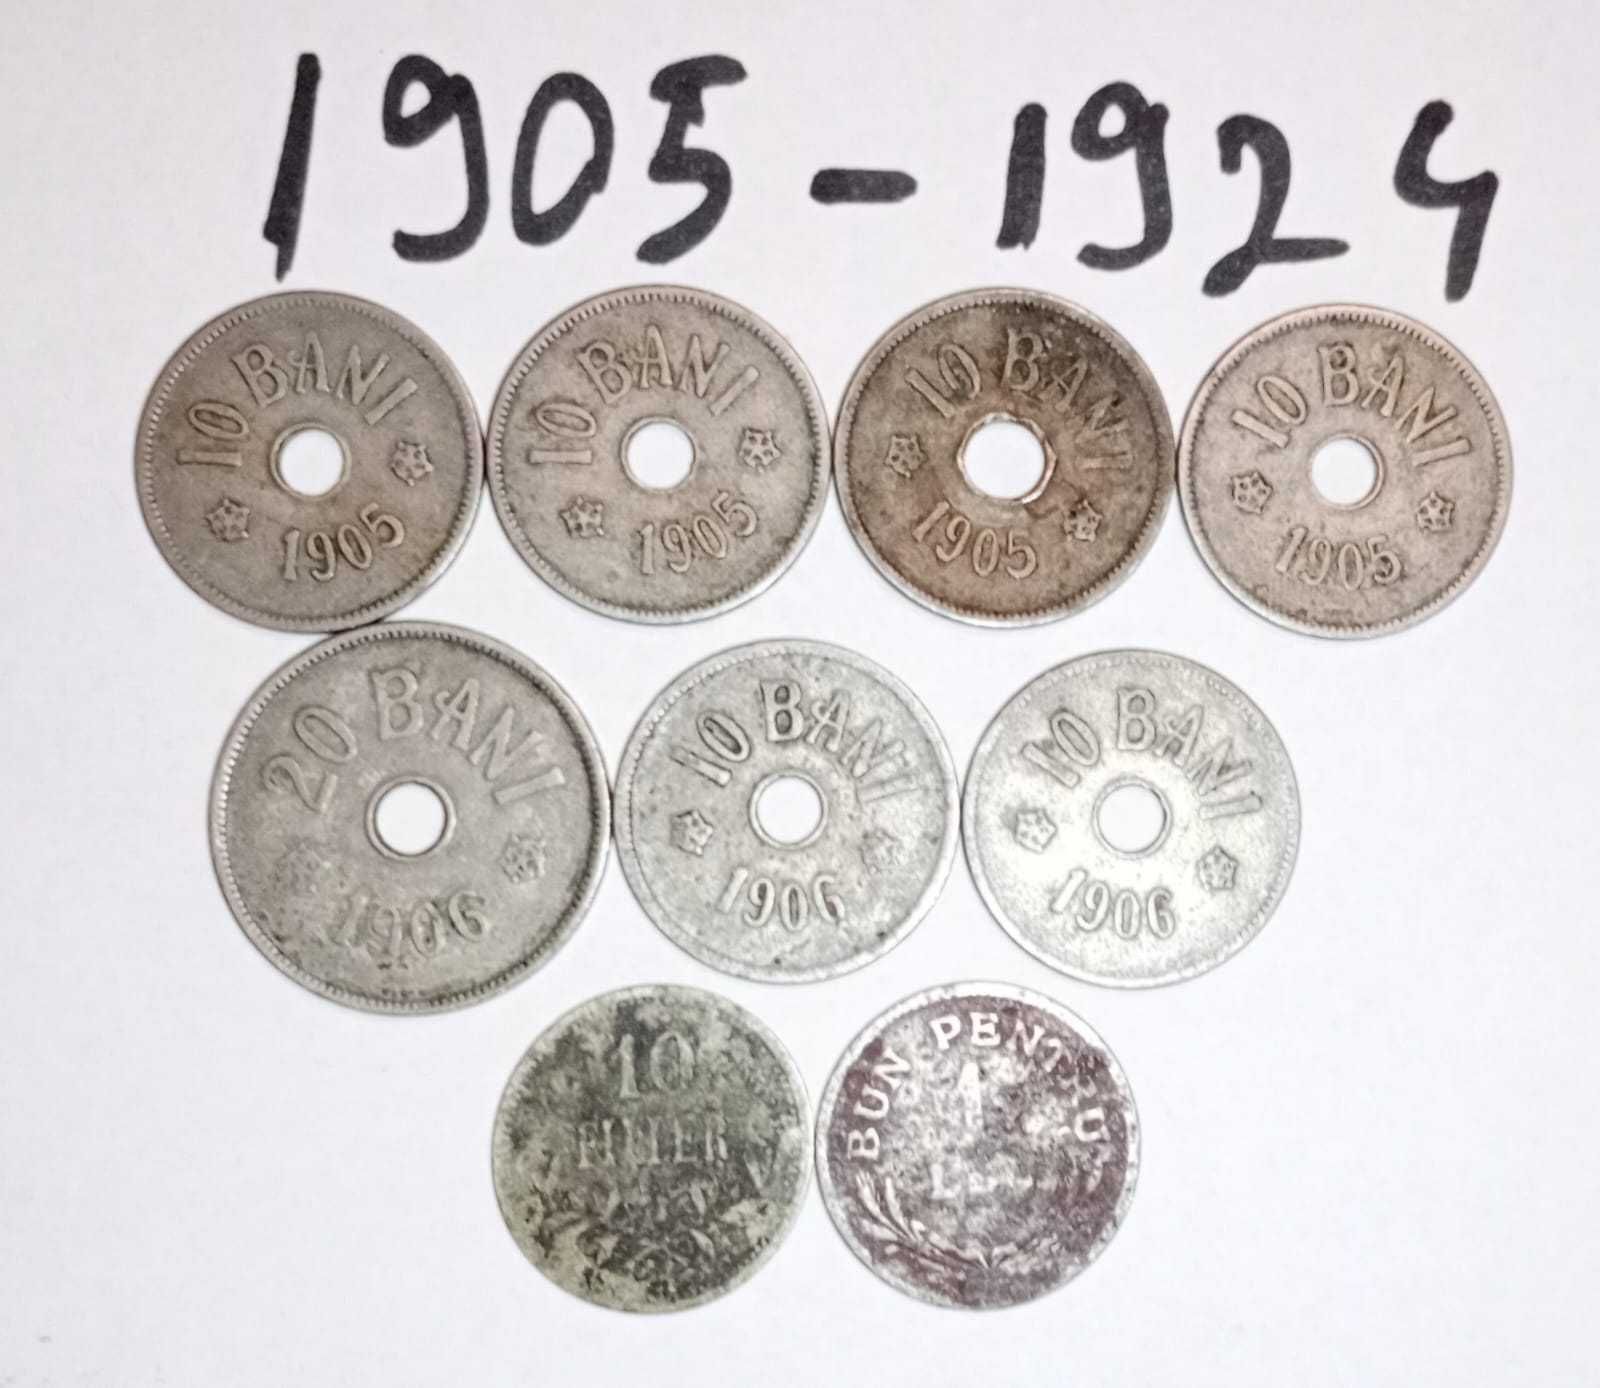 Colectie de monede si bancnote romanesti si straine